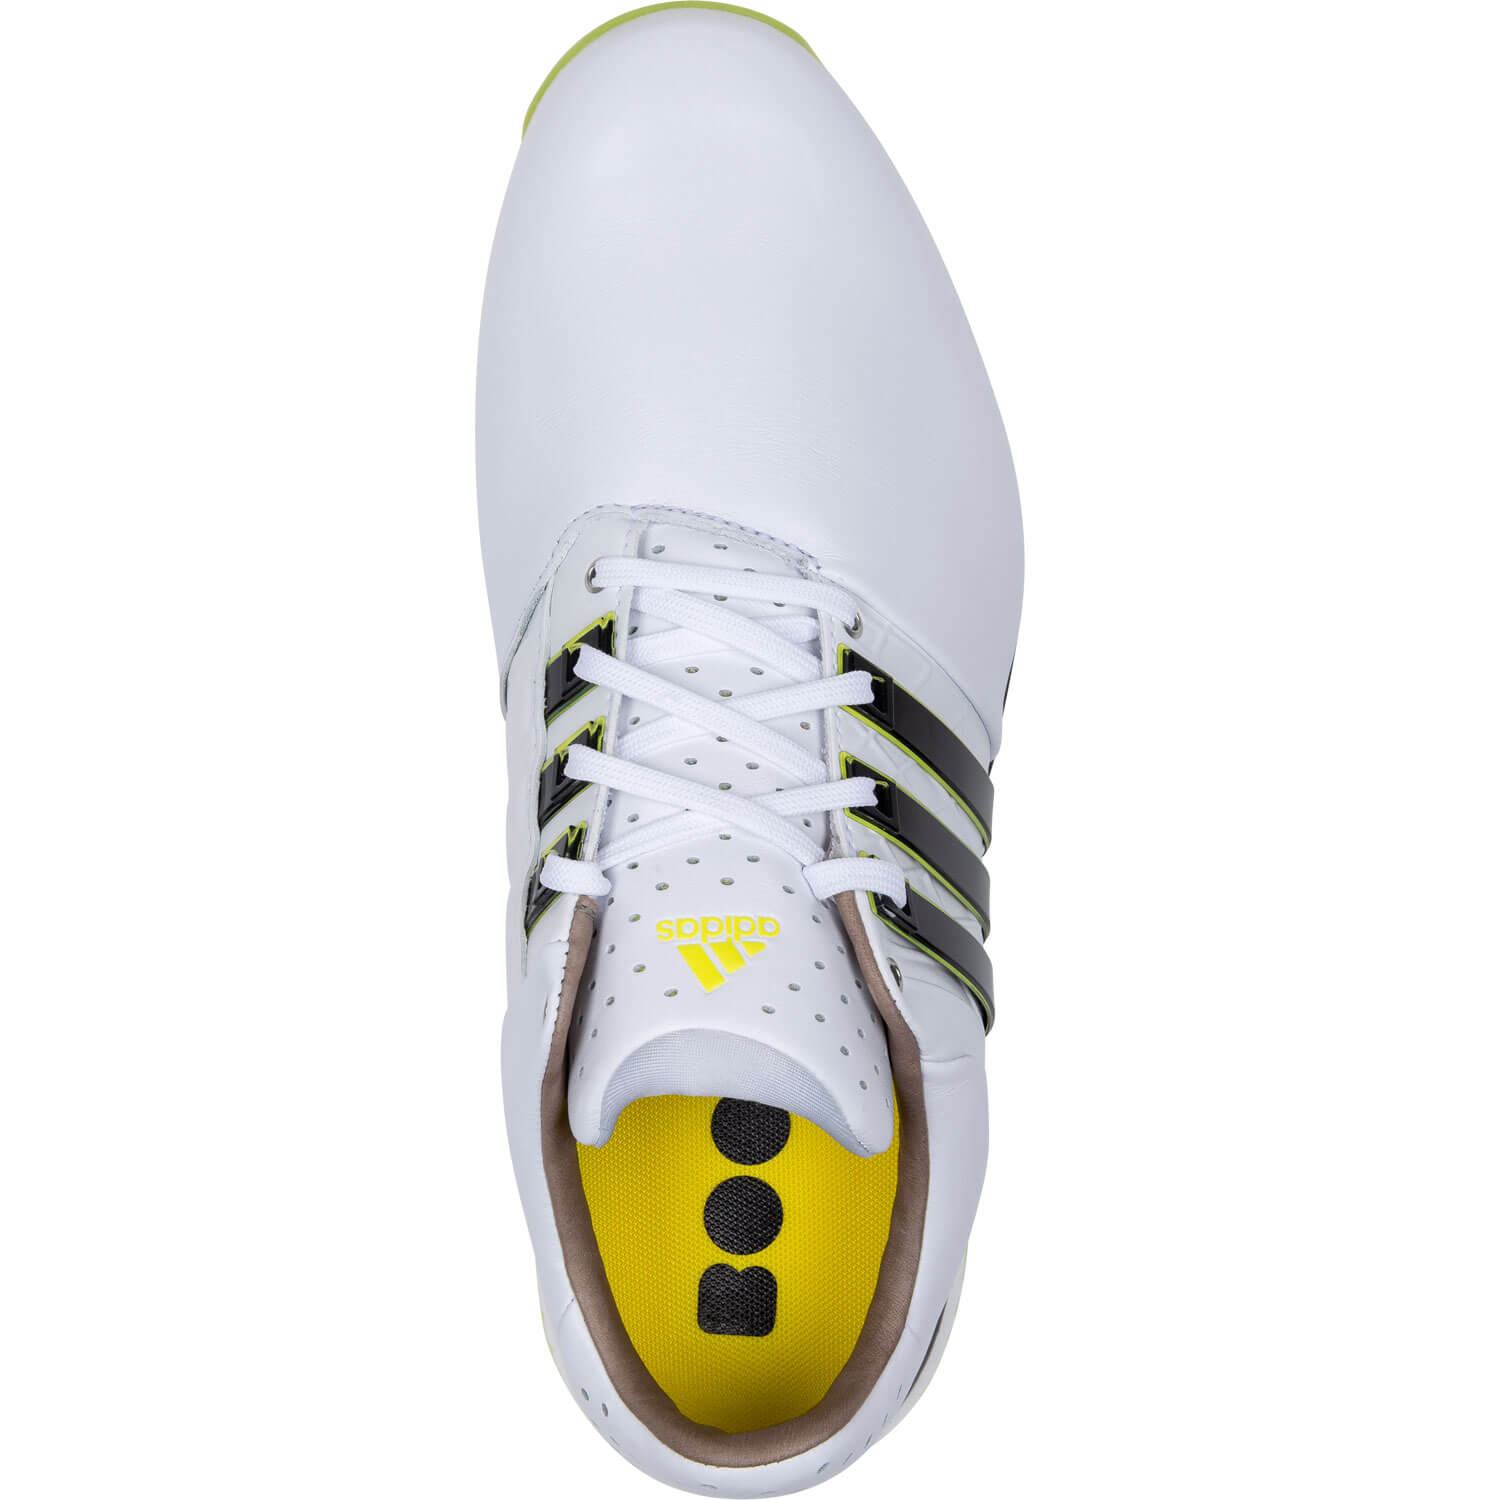 Adidas Tour360 XT-SL 2 White/Black/Yellow Herren